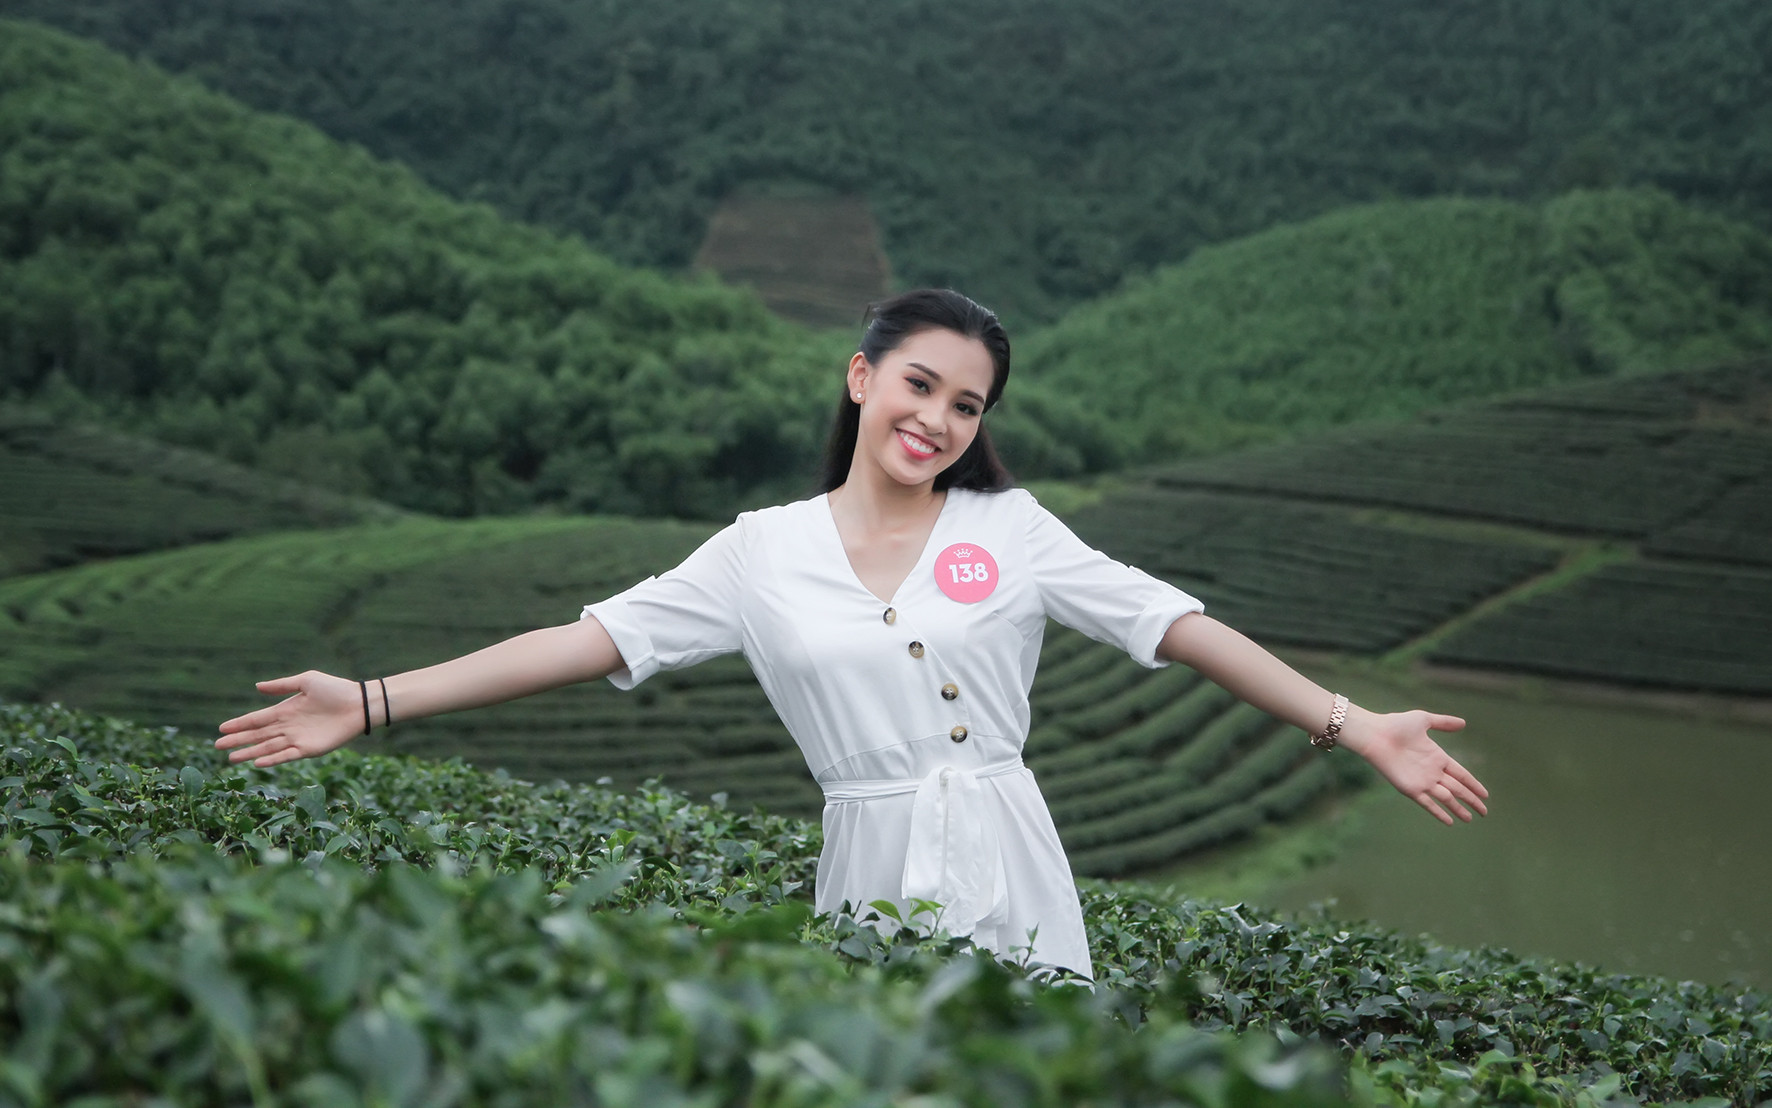 Tân Hoa hậu Việt Nam 2018 Trần Tiểu Vy đã ghi dấu những hình ảnh khoe sắc rạng rỡ ở địa điểm du lịch nổi tiếng này của xứ Nghệ. Ảnh: Sách Nguyễn